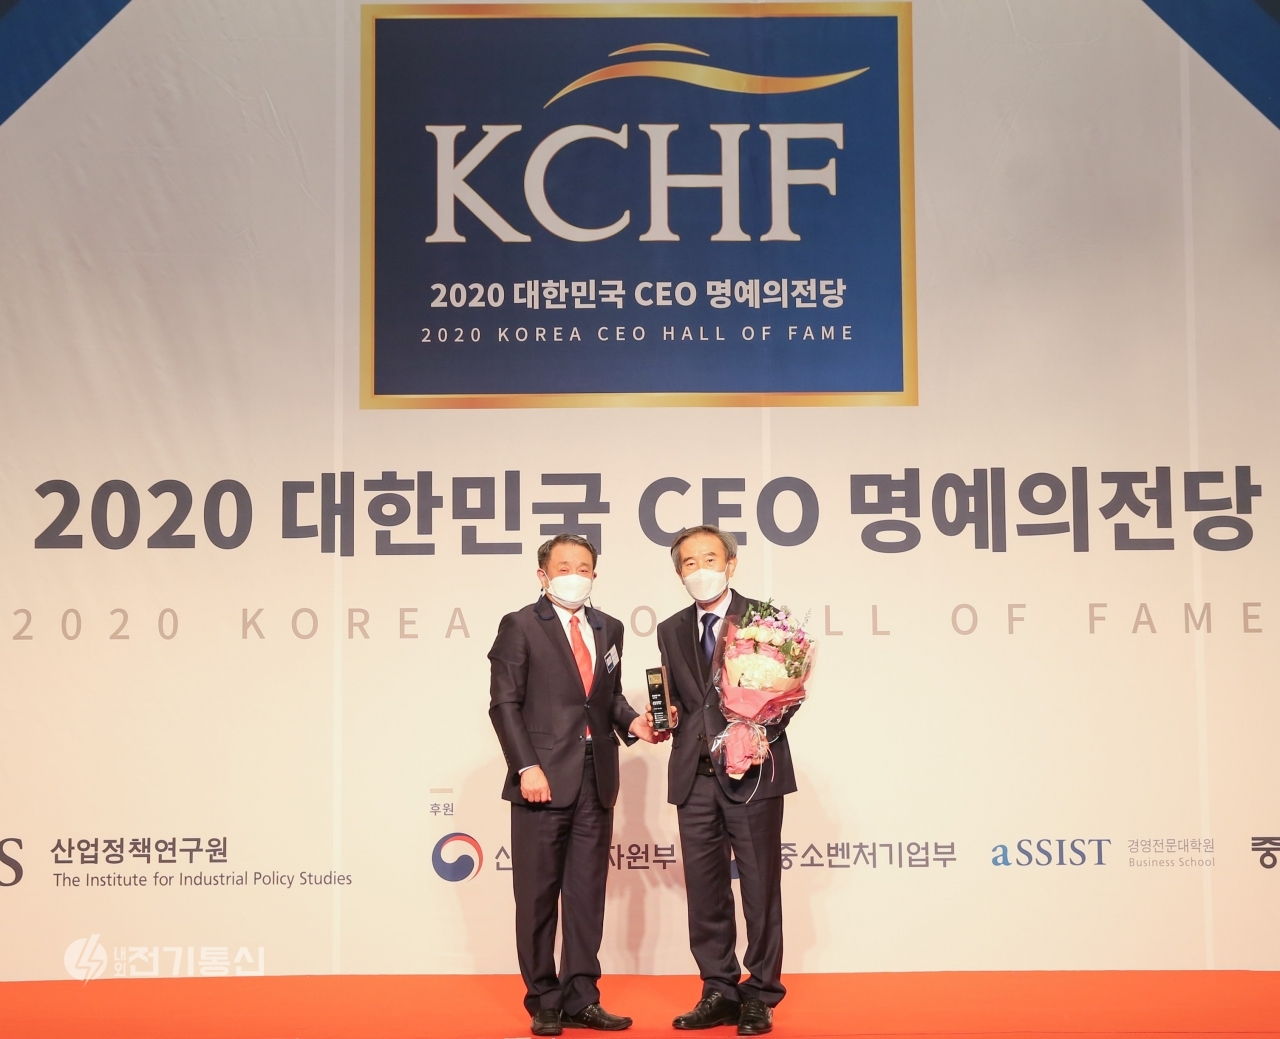 김병숙 한국서부발전 사장(오른쪽)은 18일 서울 스위스그랜드호텔에서 열린 ‘2020 대한민국 CEO 명예의 전당’ 시상식에서 3년 연속으로 환경경영 부문 우수 CEO로 선정되는 영예를 안았다.  (사진제공 = 서부발전 홍보실)